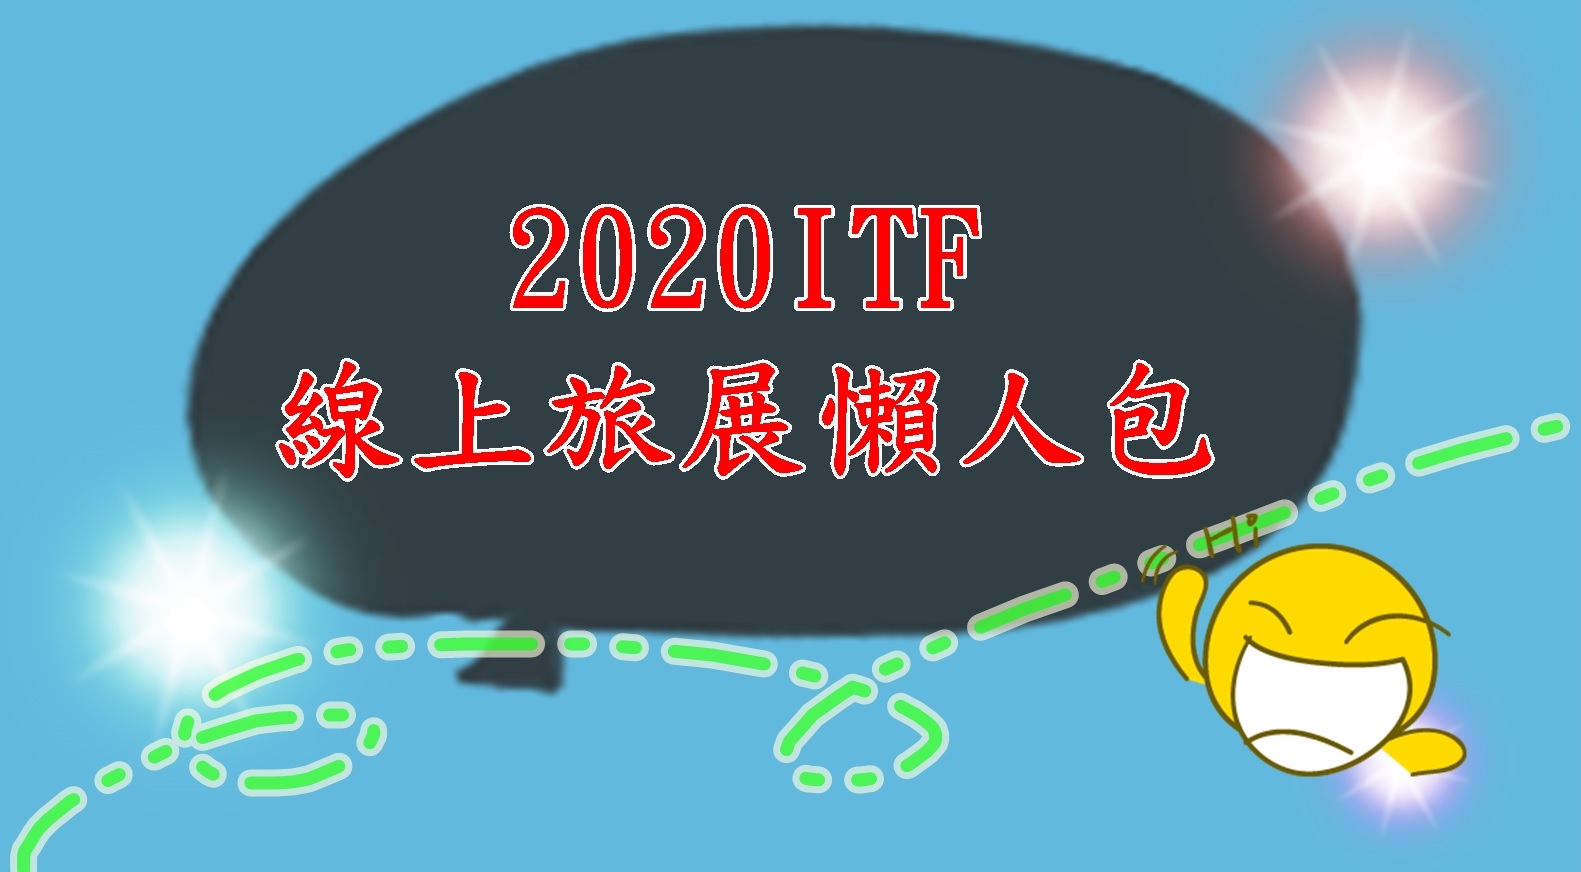 2020ITF,2020ITF線上旅展,itf